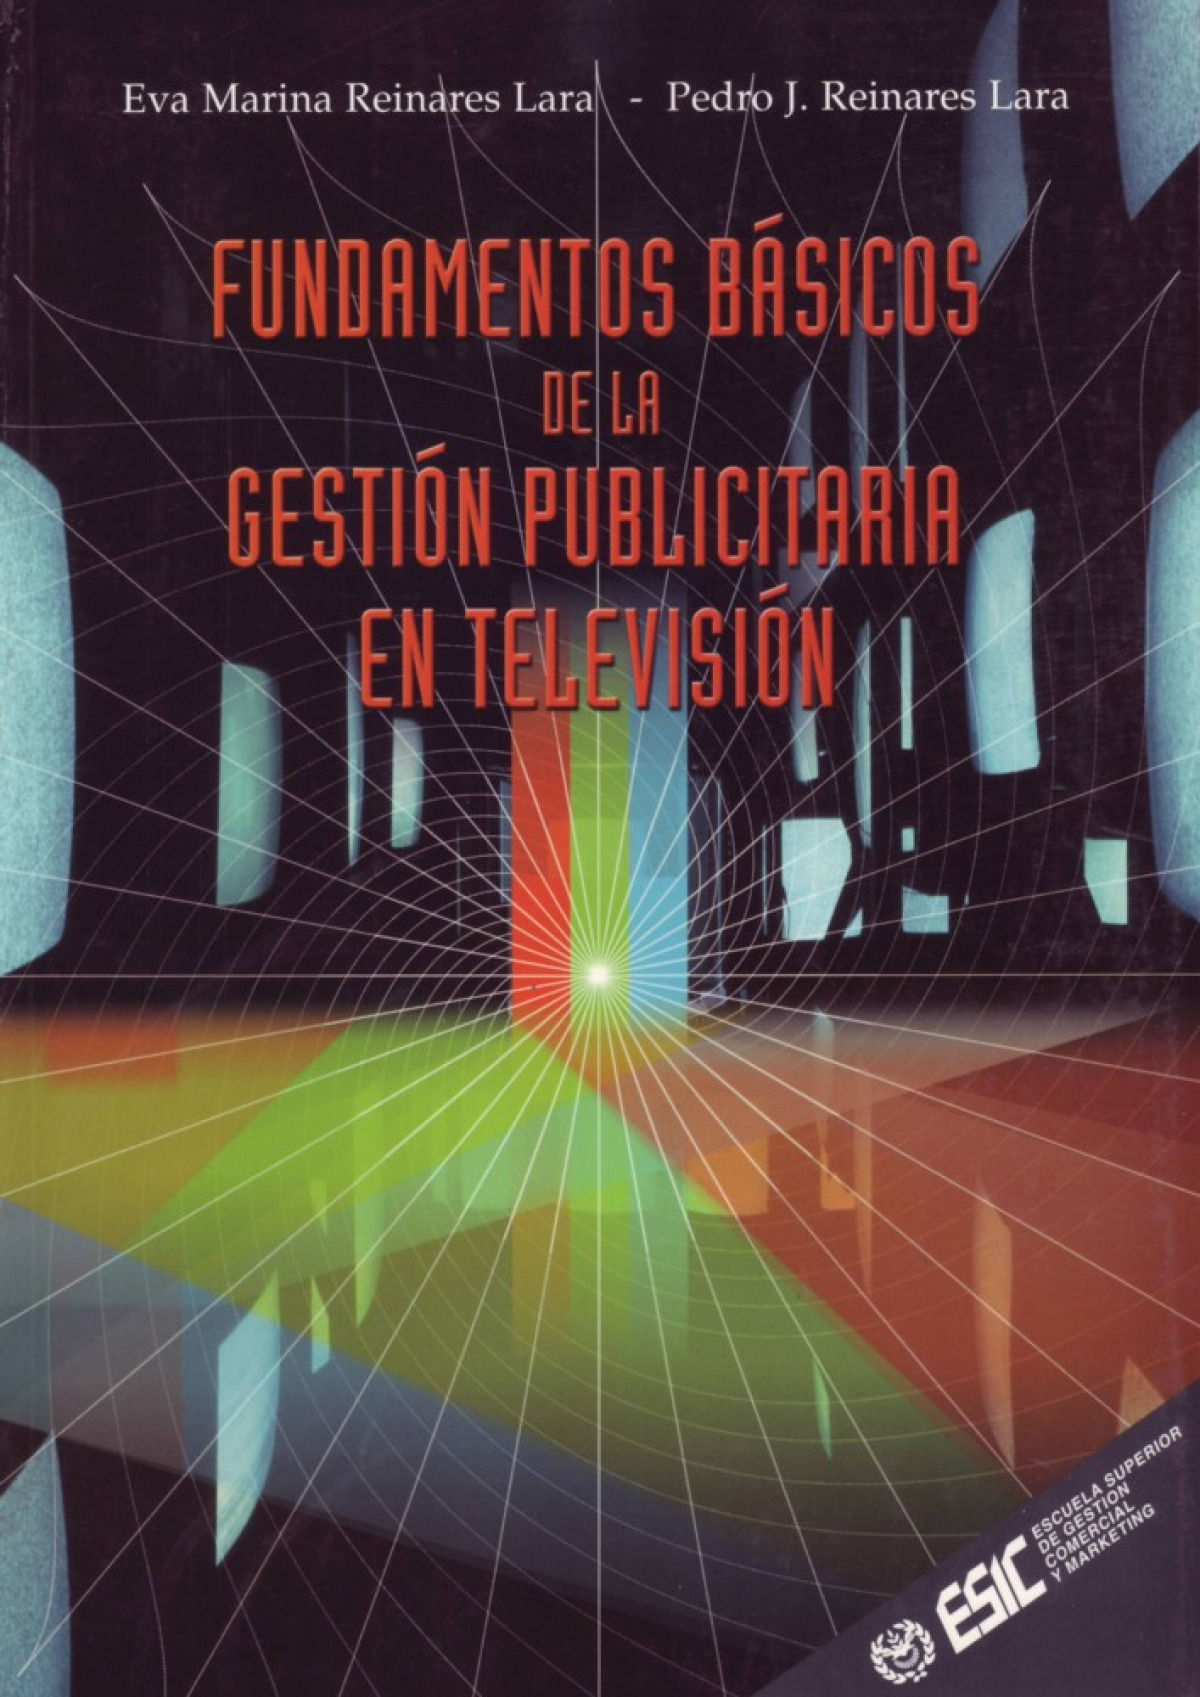 Fundamentos básicos de la gestión publicitaria en televisión - Lara Reinares, Eva